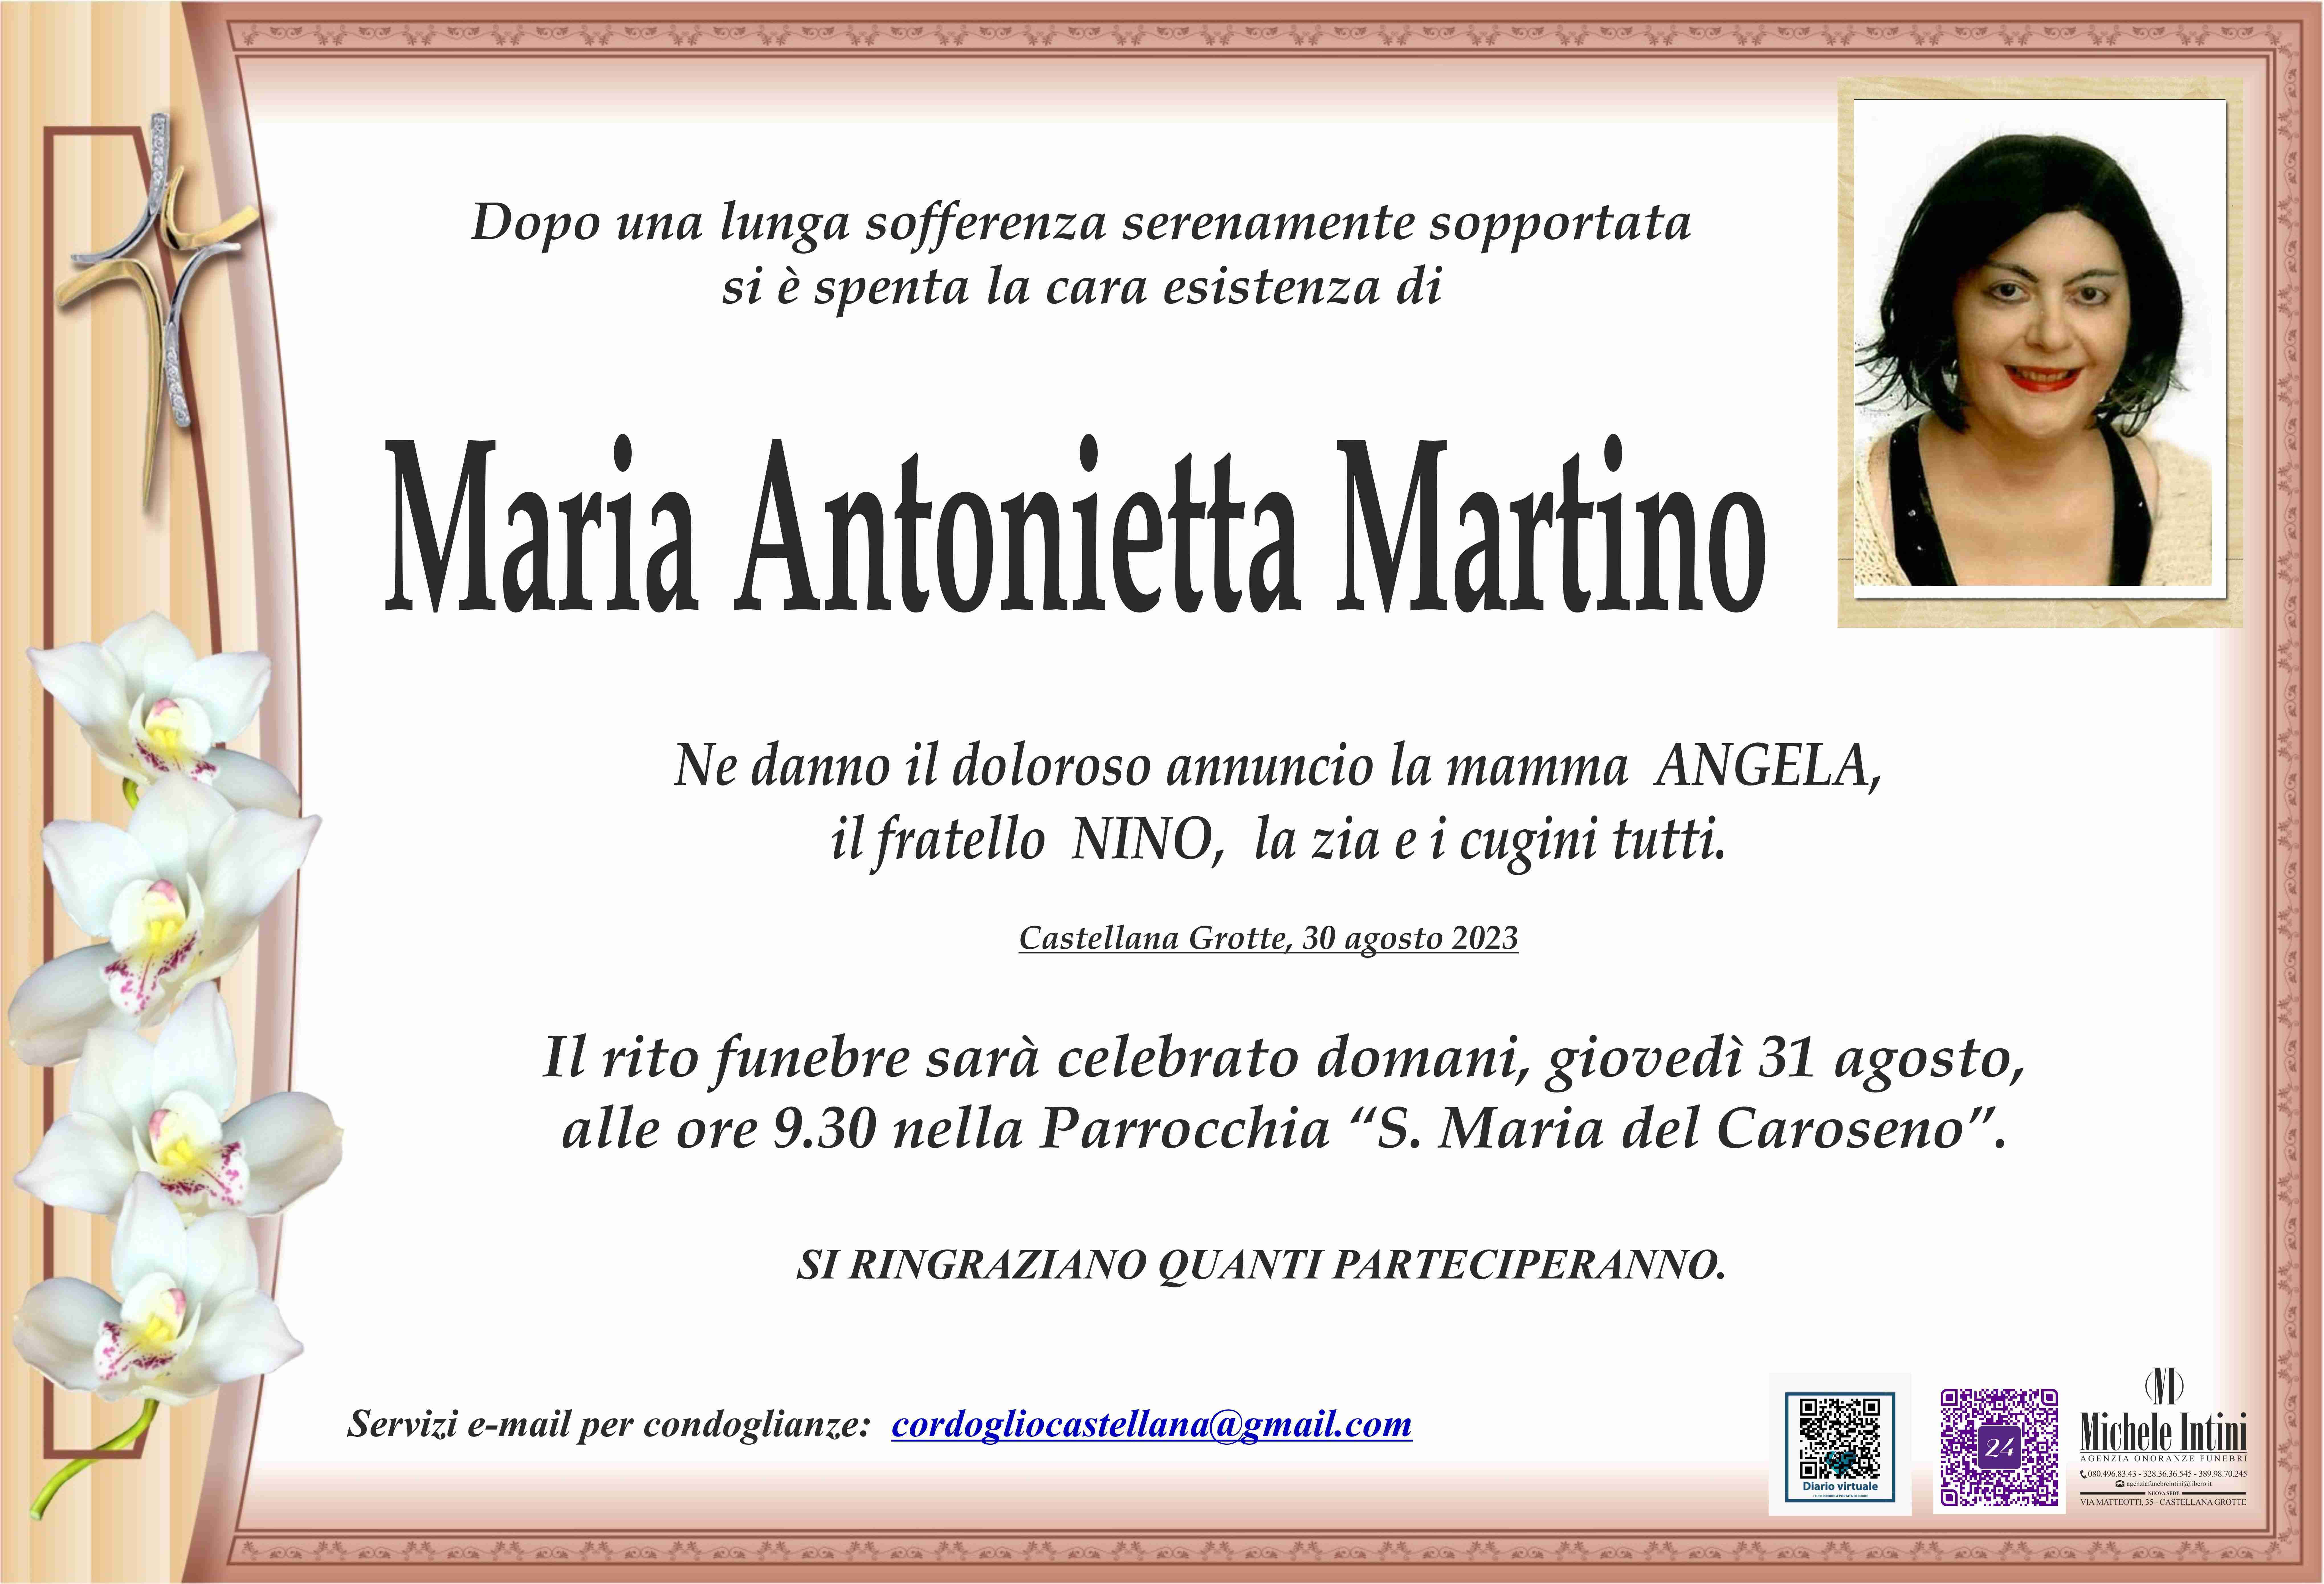 Maria Antonietta Martino